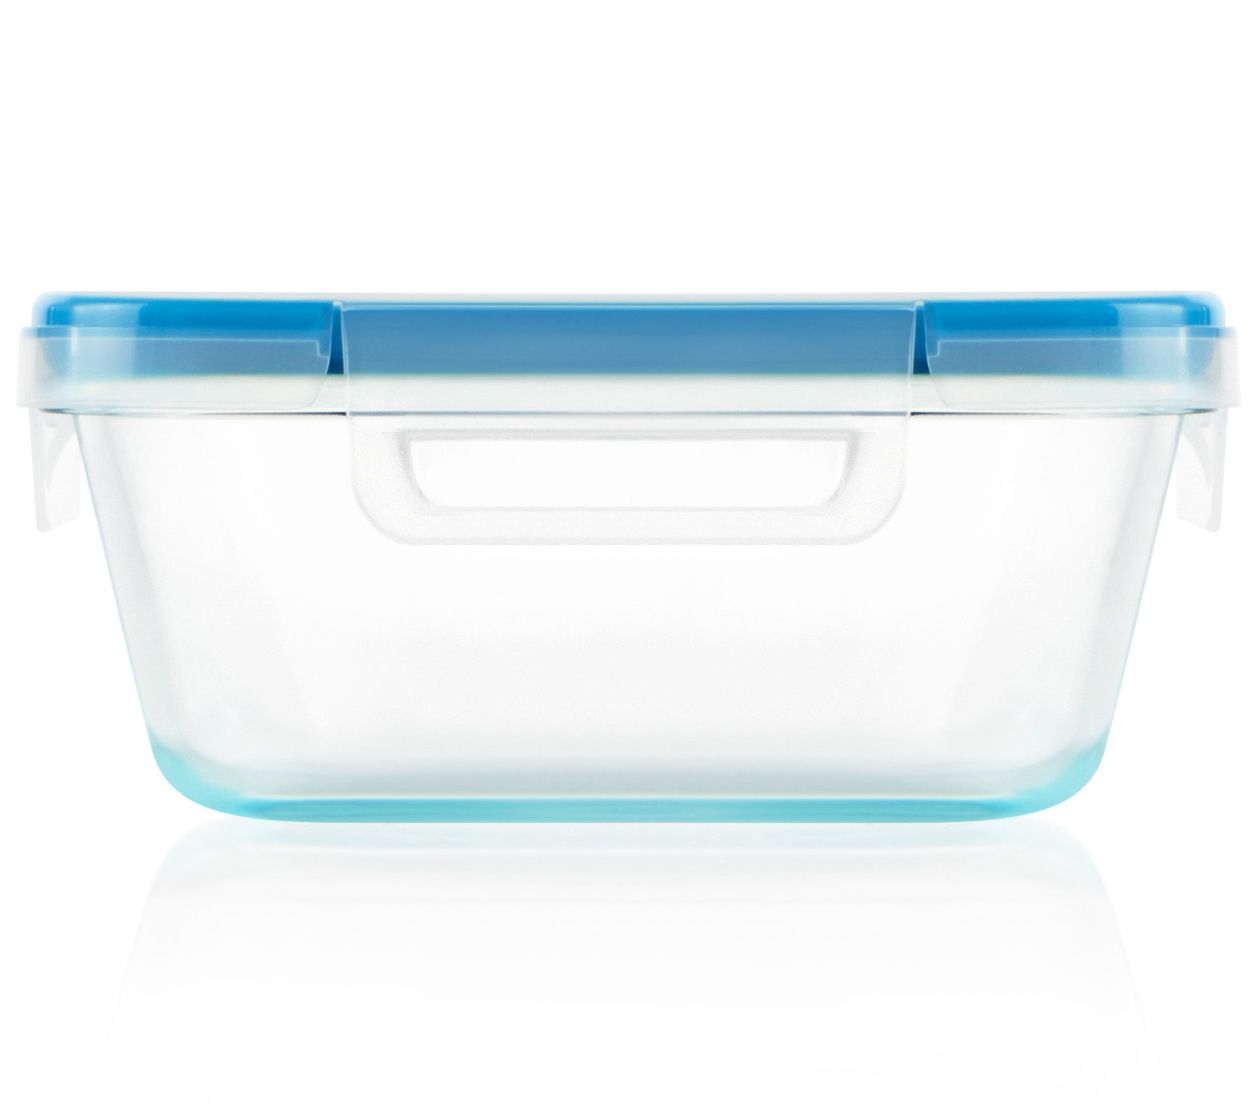 Snapware Pyrex 18-Piece Glass Food Storage Set W/ Lids